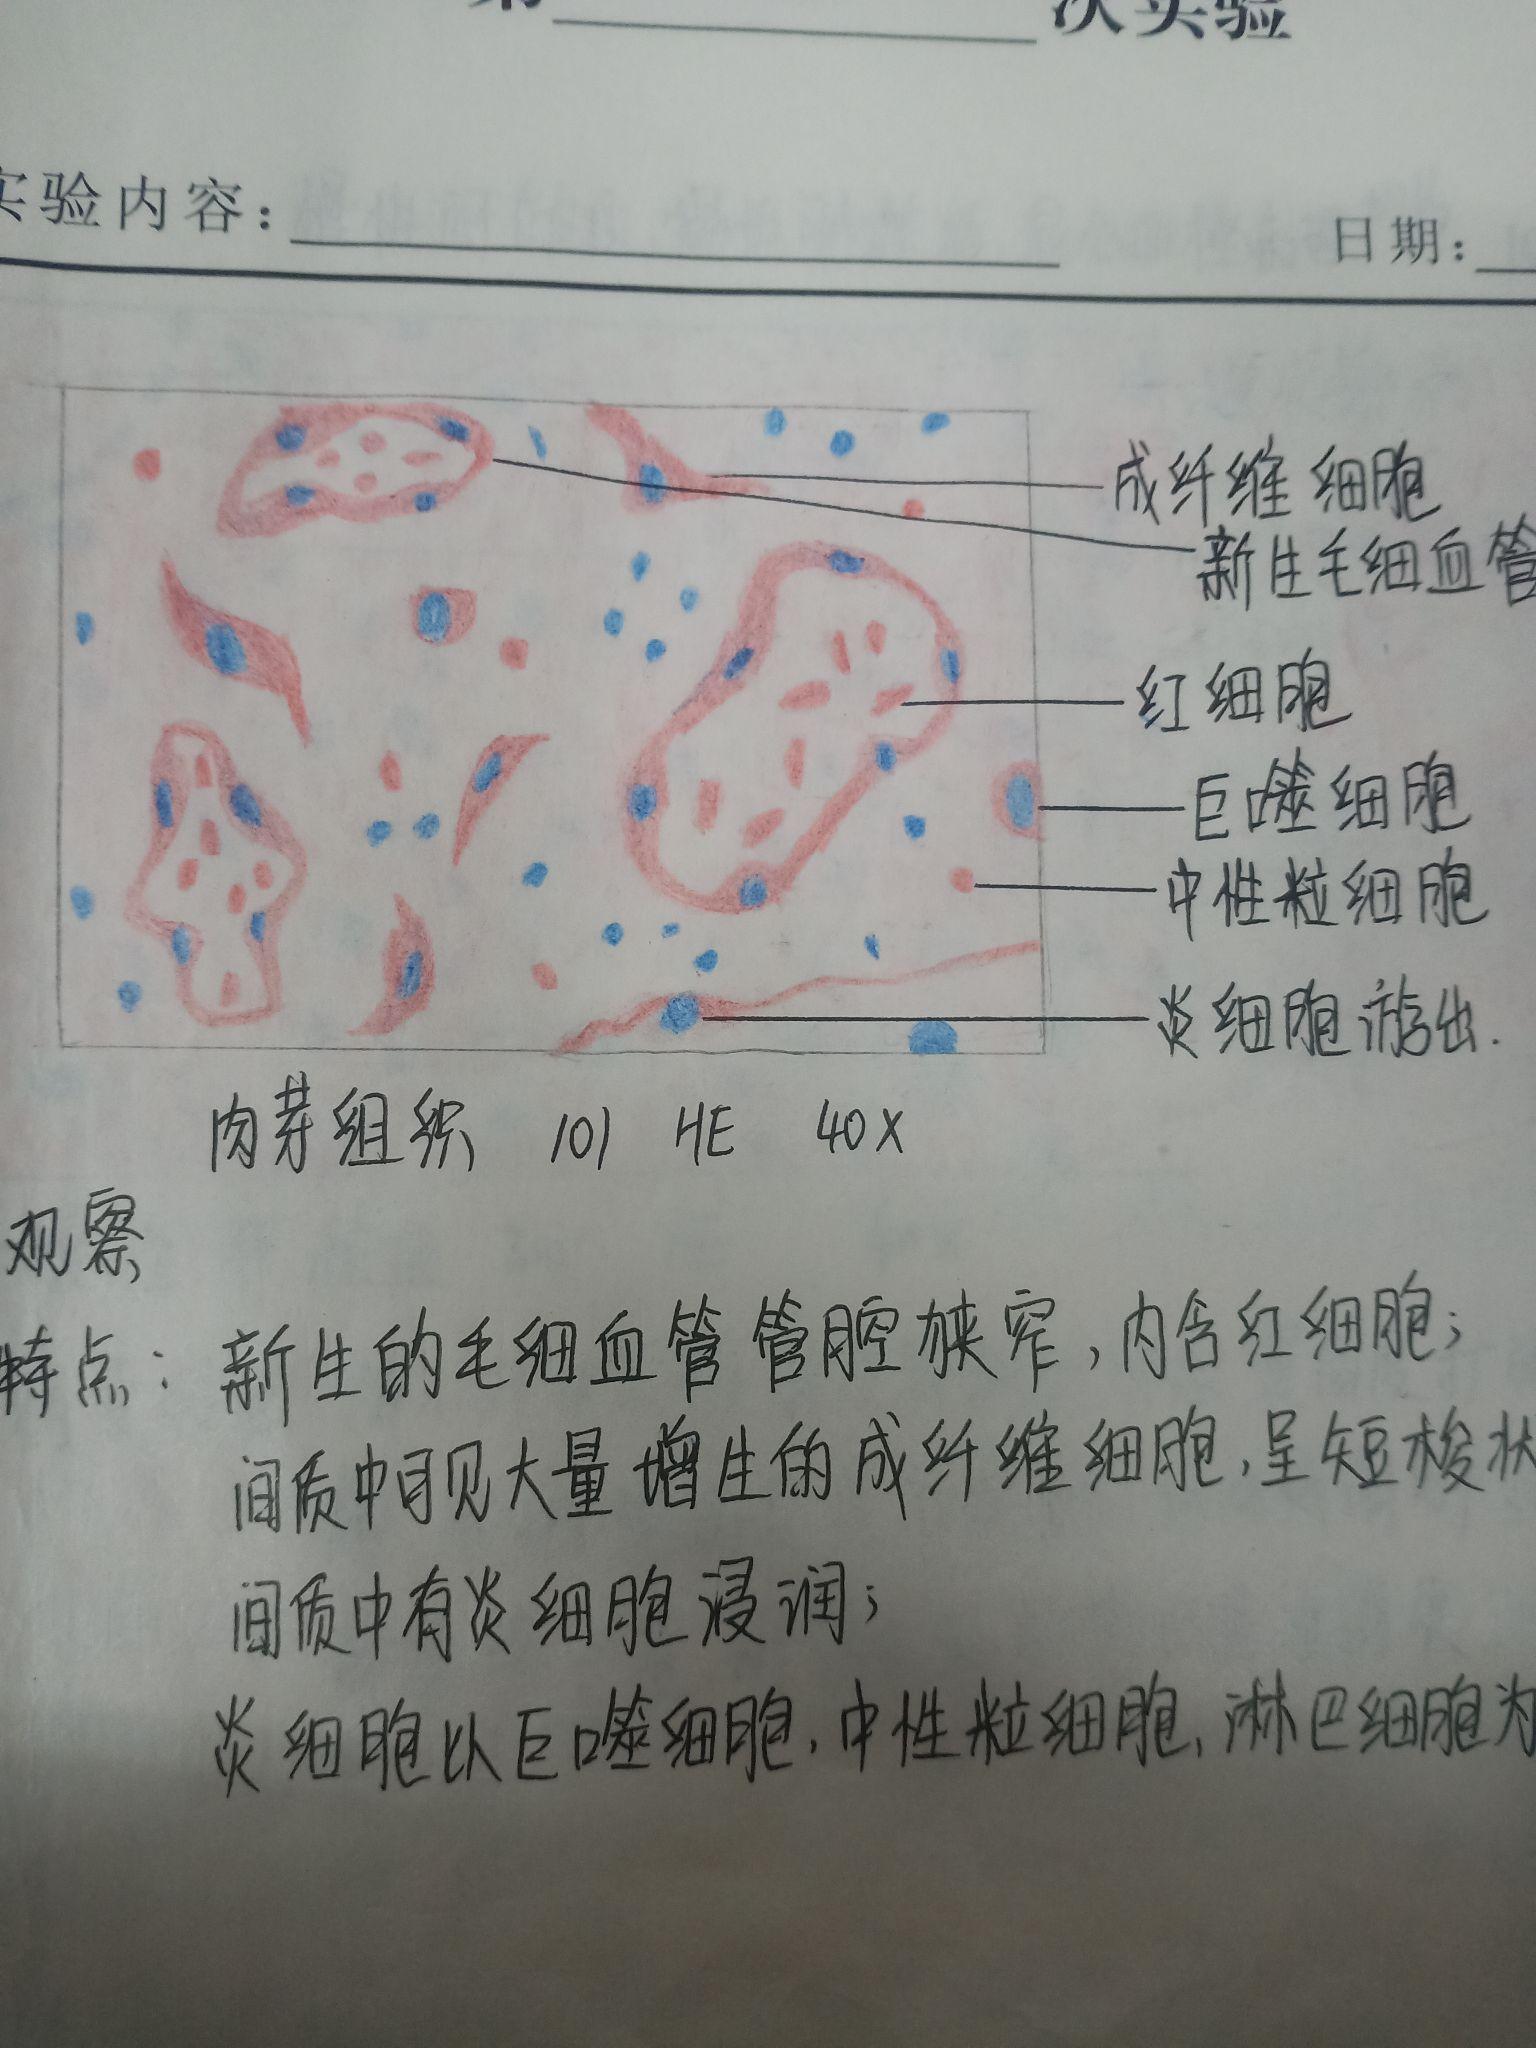 中性粒细胞绘图红蓝图片